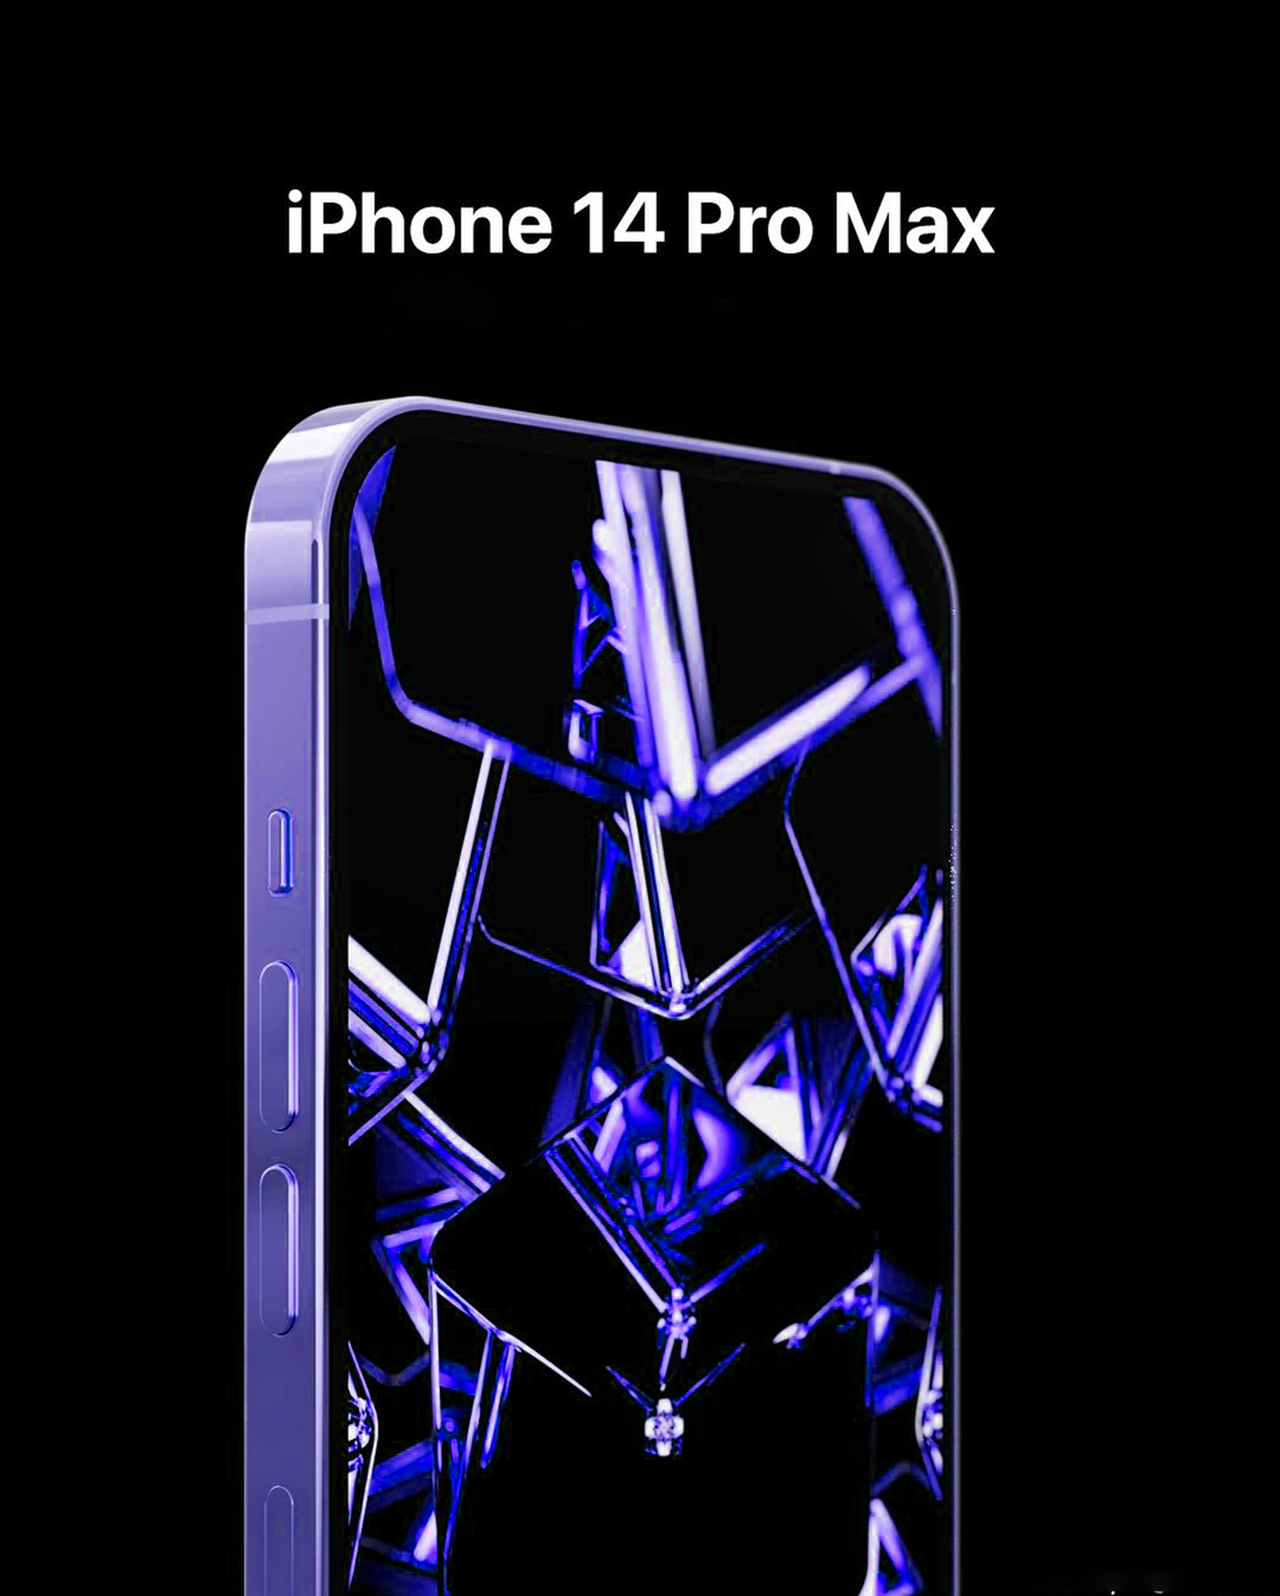 iPhone 14 Pro Max xanh neon: Màu sắc xanh neon sẽ mang đến cho bạn nhiều sự tươi mới và năng động. Hãy nhìn vào sản phẩm iPhone 14 Pro Max xanh neon để hiểu rõ hơn về sự táo bạo và cá tính trong thiết kế của nó.